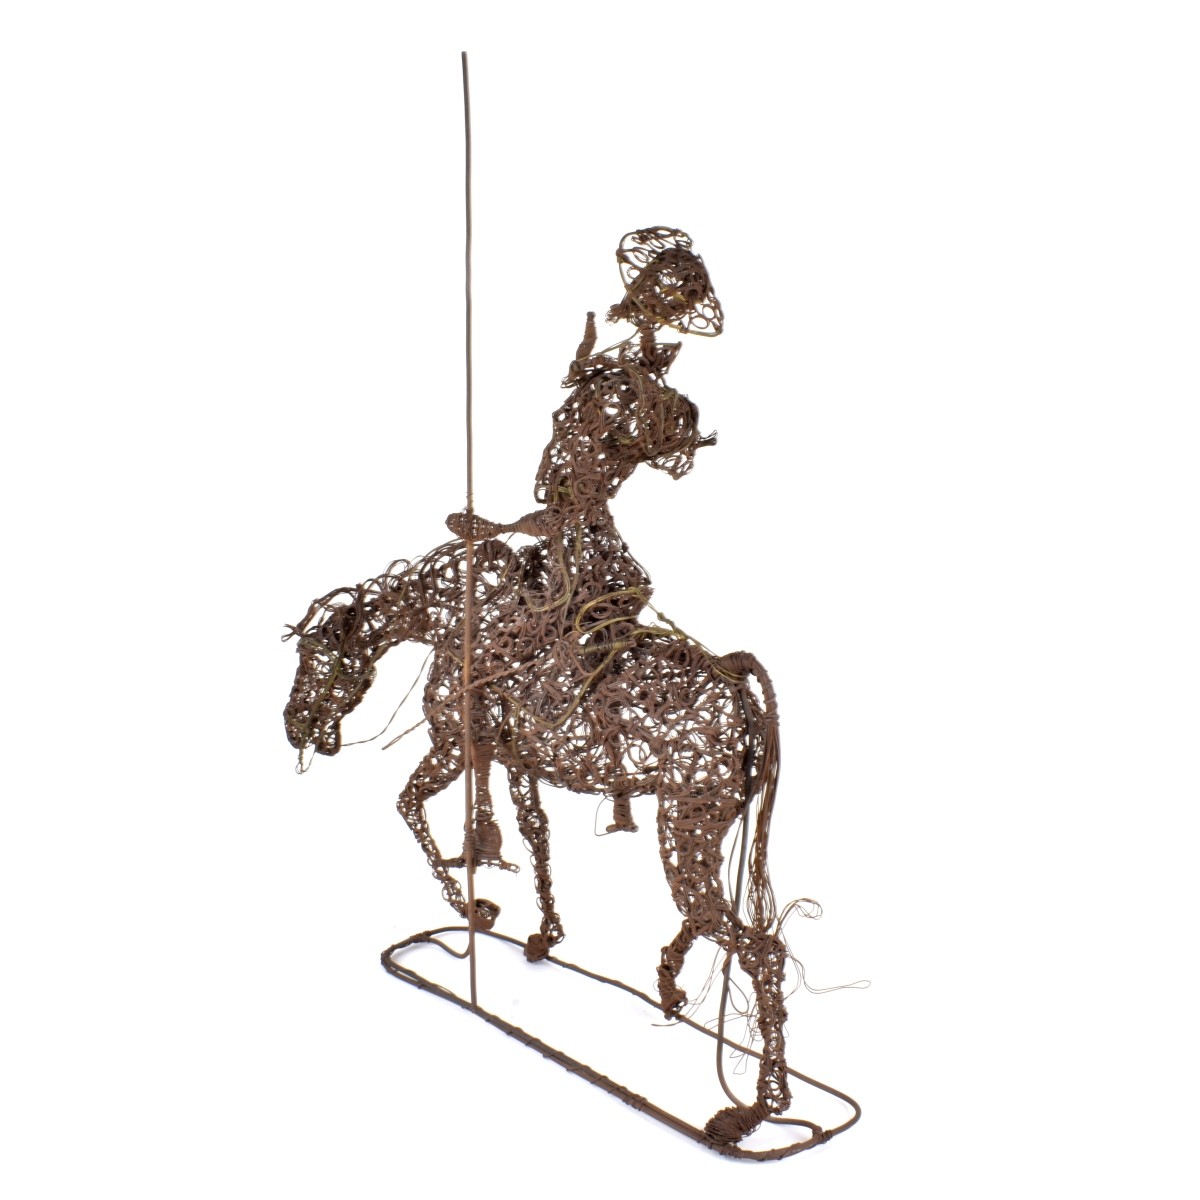 Don Quixote Sculpture